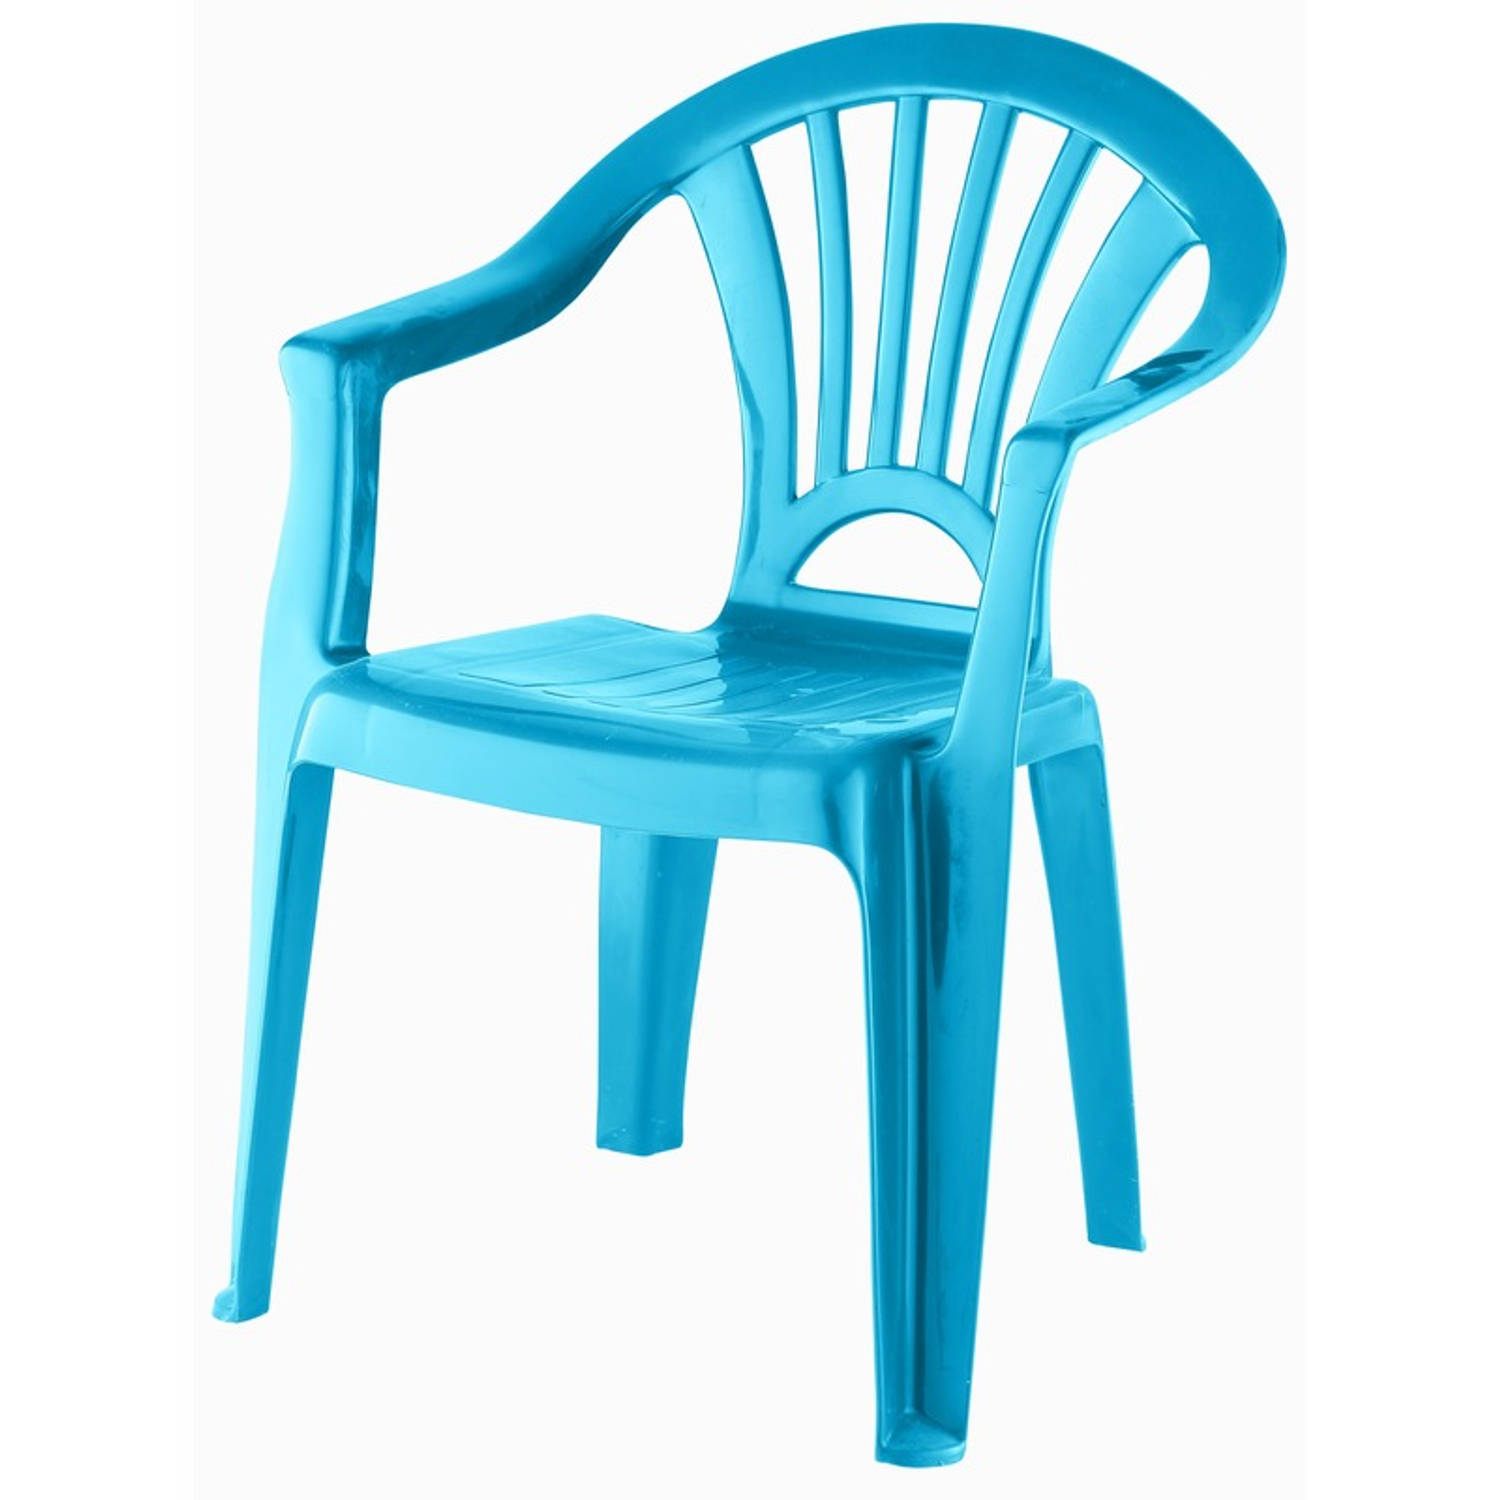 Voorloper Zich voorstellen Latijns Kinderstoel blauw kunststof 37 x 31 x 51 cm - Kinderstoelen | Blokker